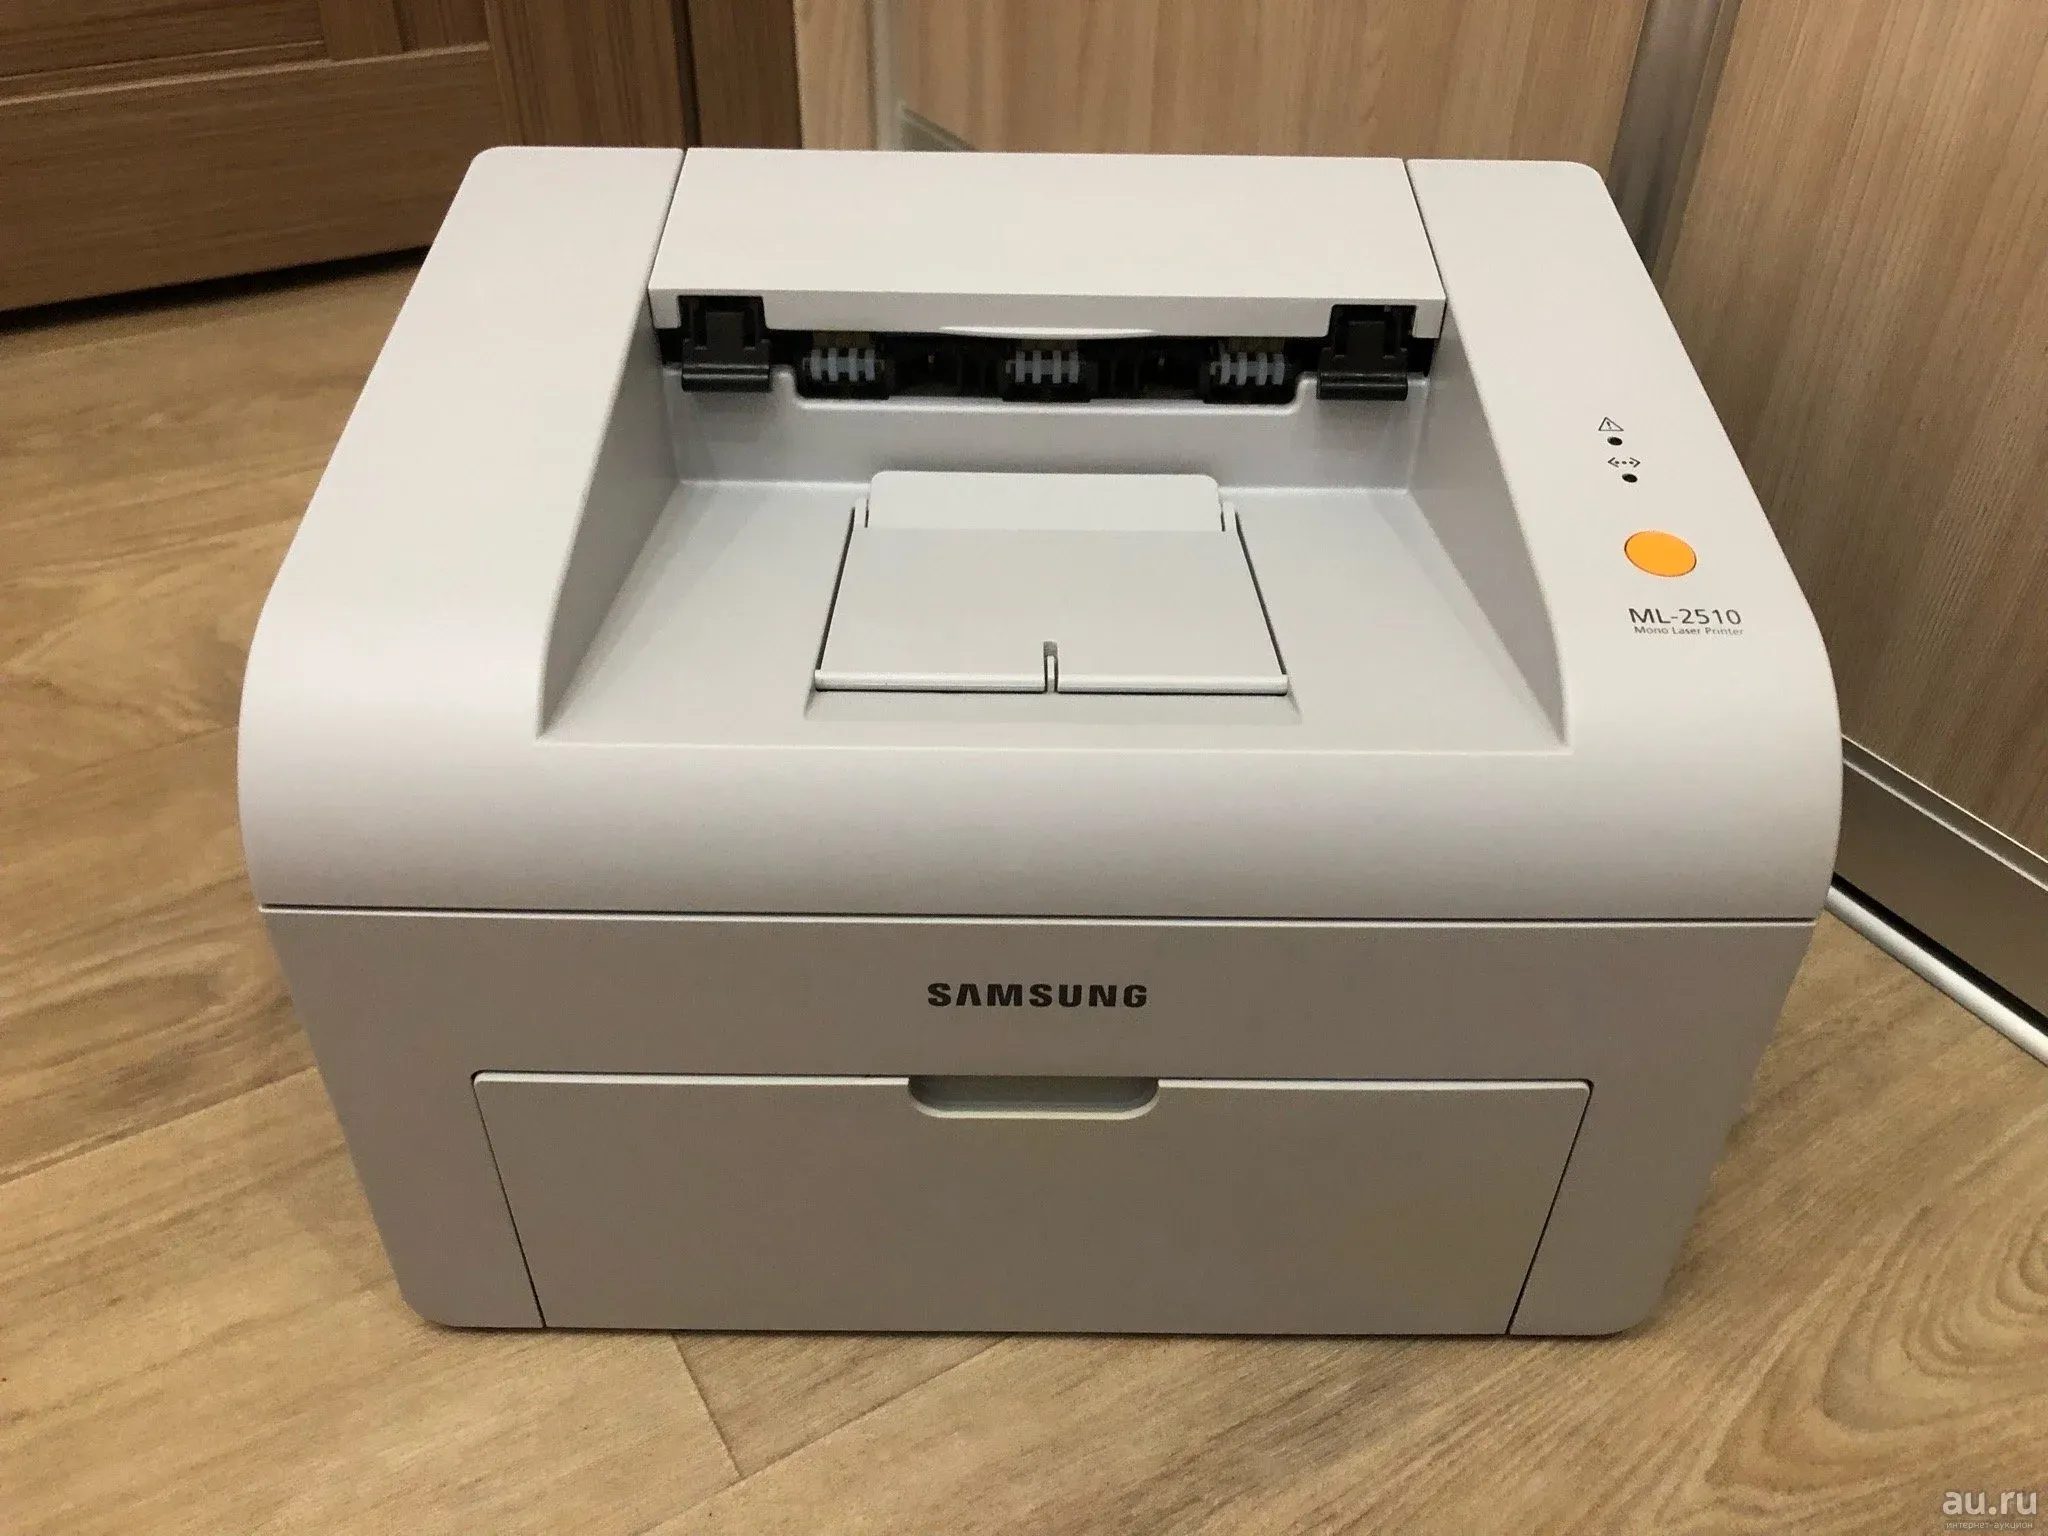 Купить принтер бу на авито. Принтер Samsung ml-2510. Samsung ml 2510. 2510 Самсунг лазерный принтеры. Ml-2510.